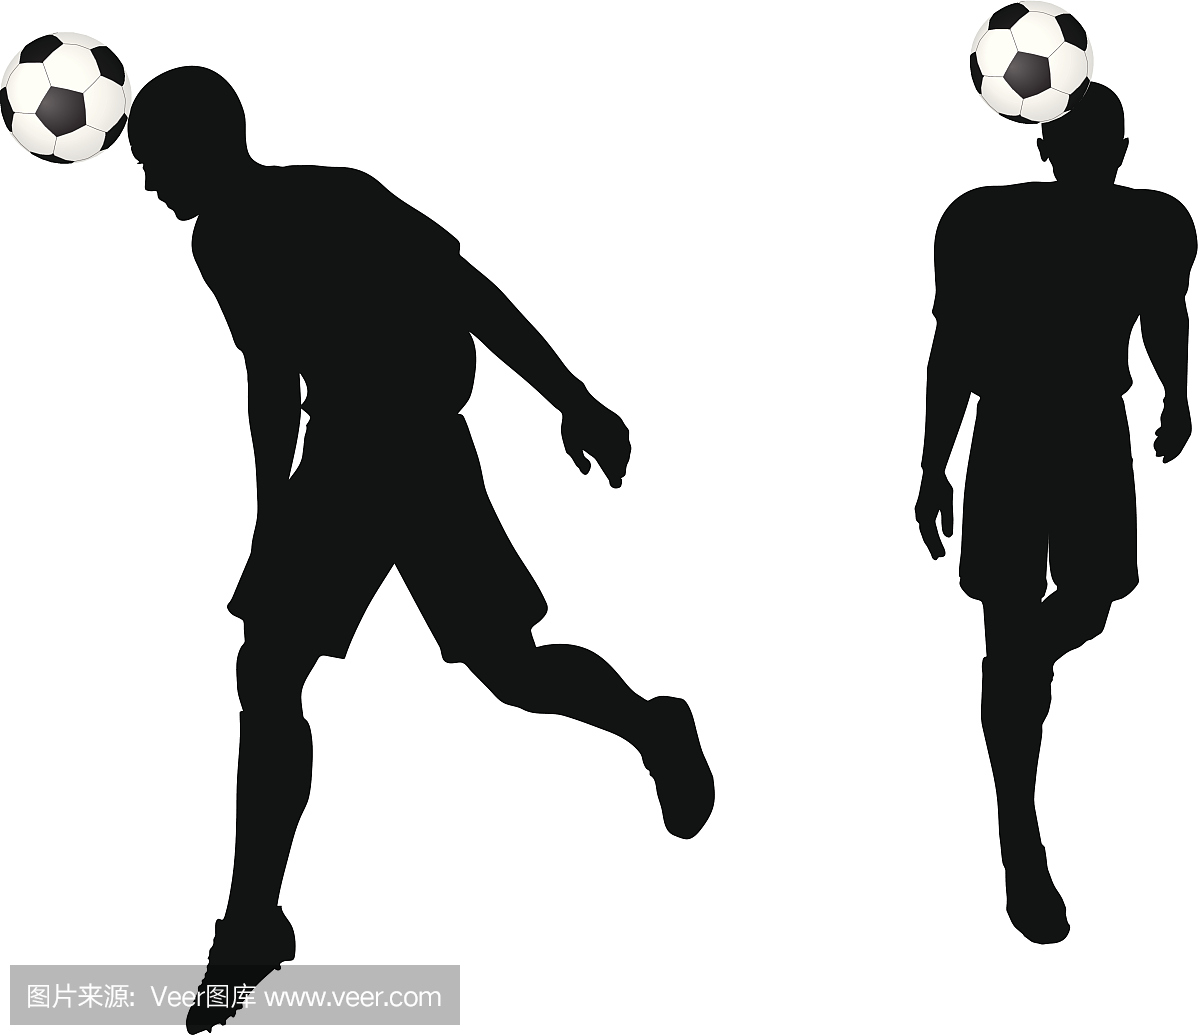 姿势的足球运动员轮廓在头部打击位置